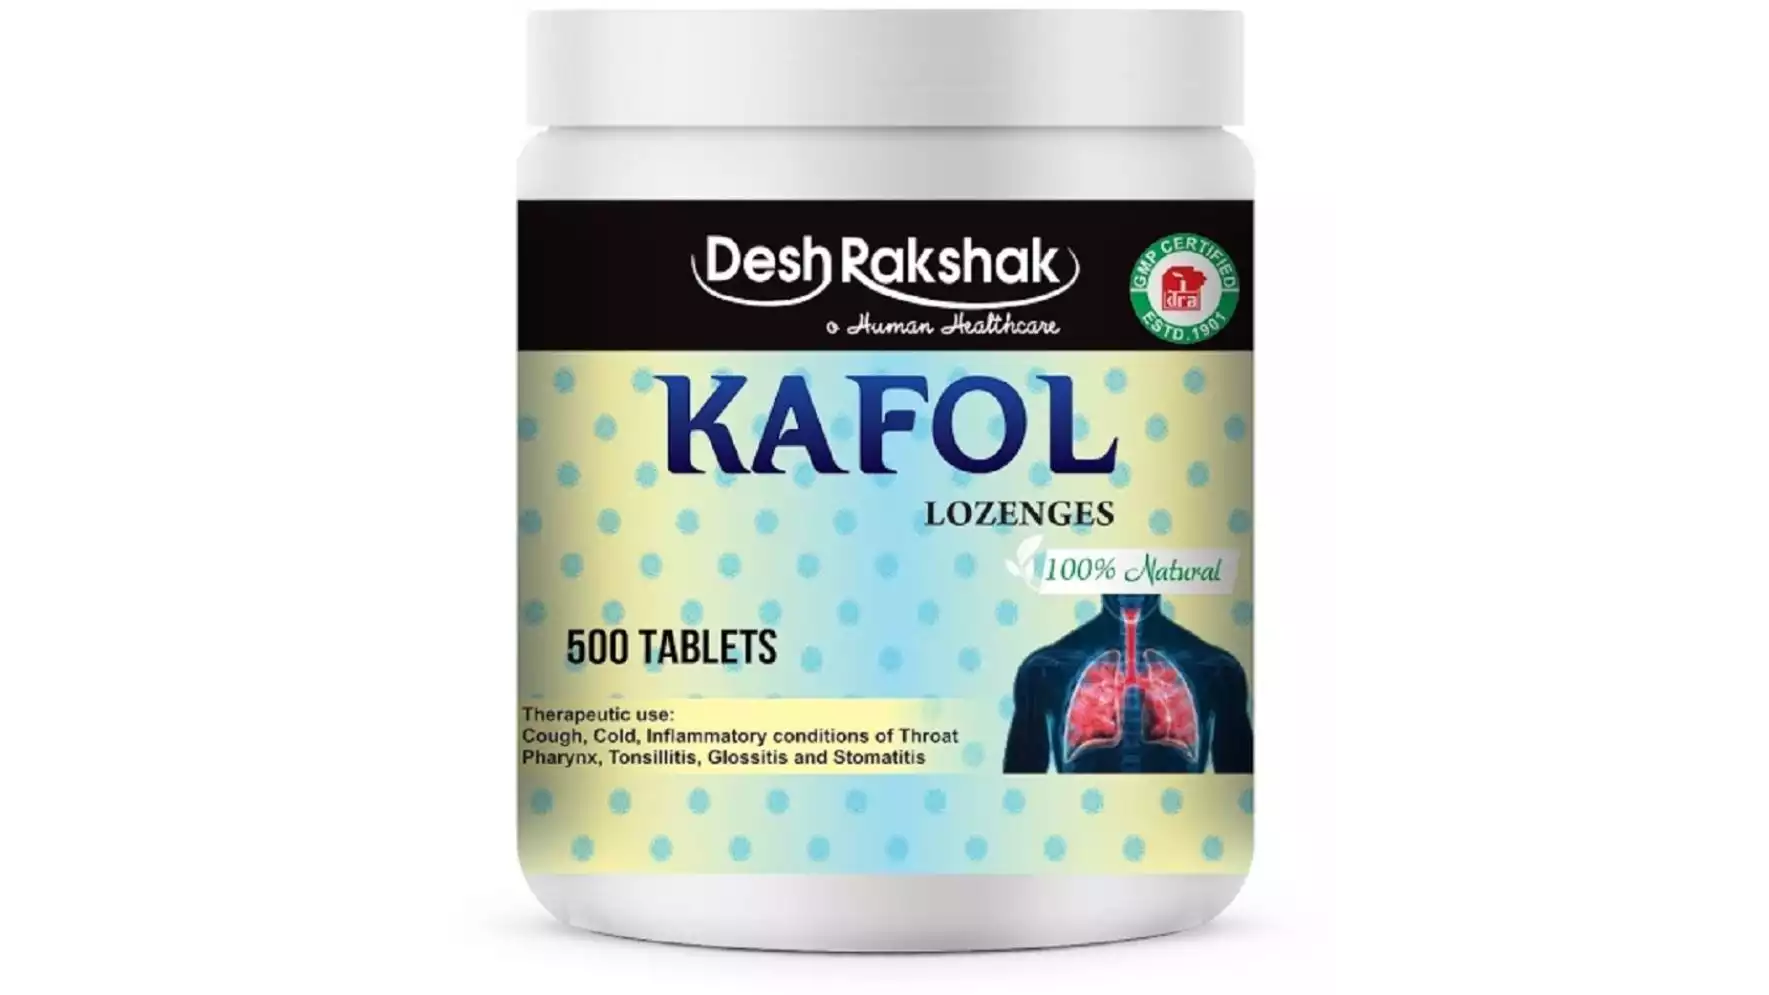 Deshrakshak Kafol Tablets (500tab)